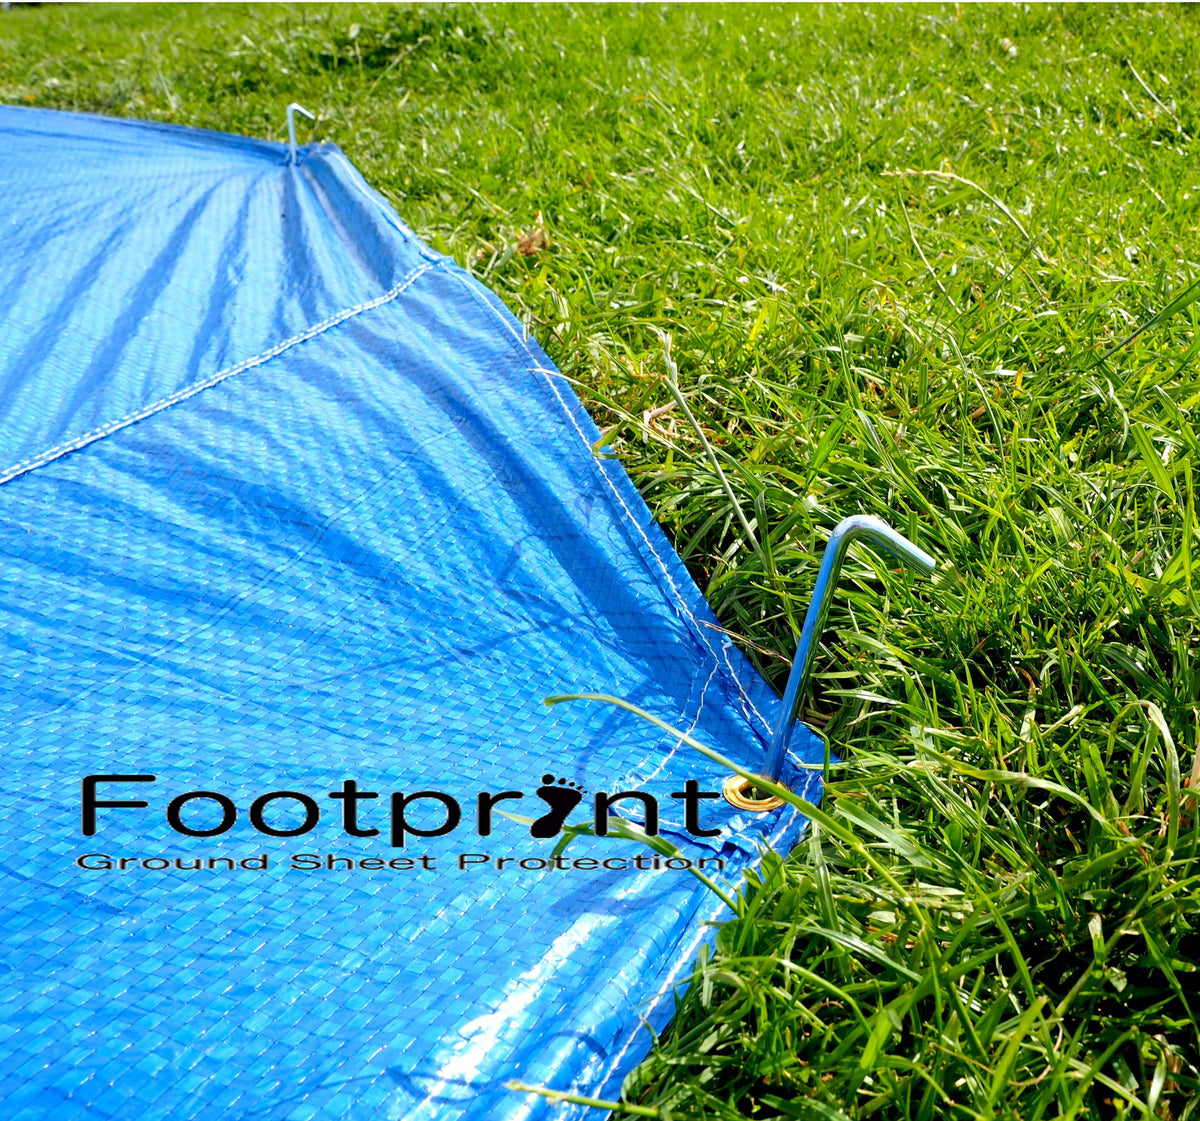 Emperor Footprint - Bell Tent Groundsheet Protector